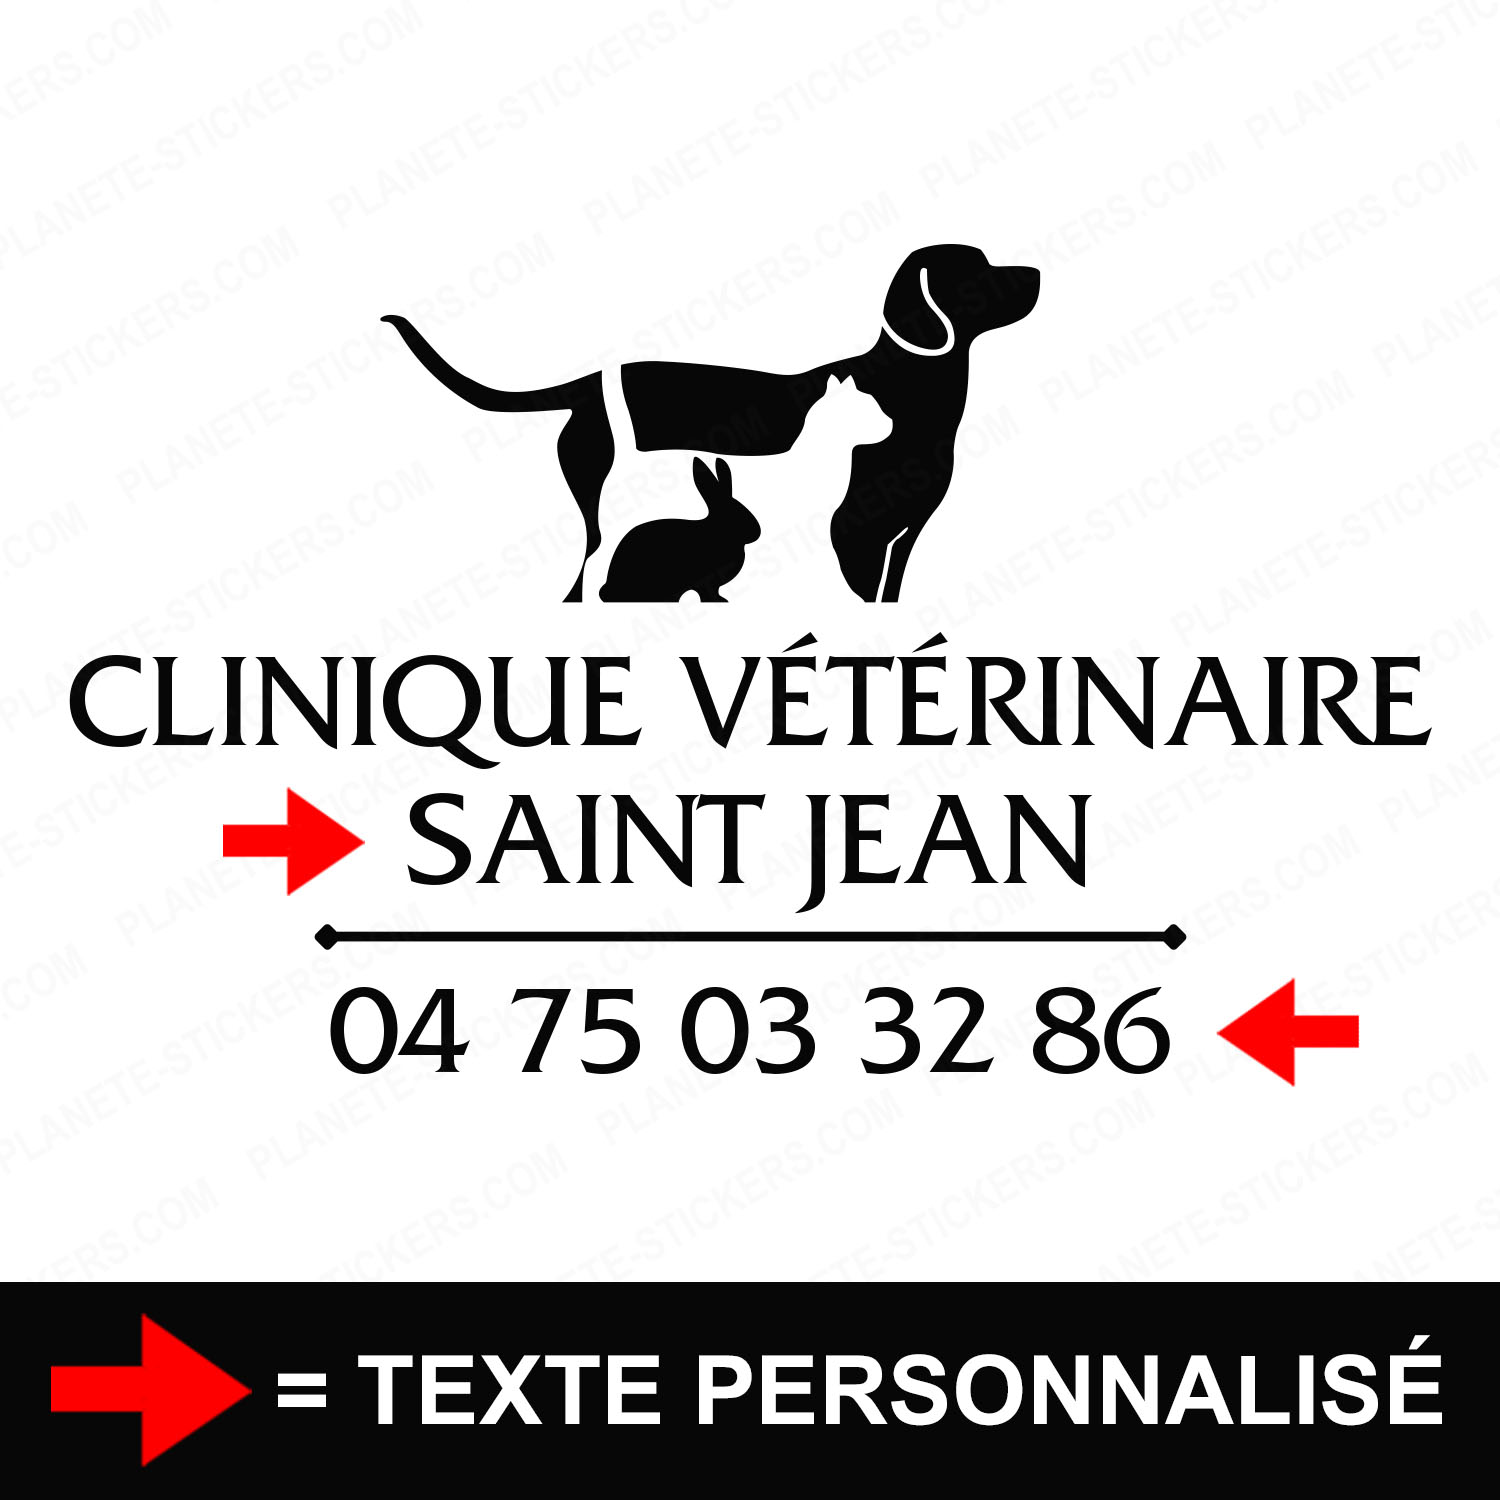 ref17veterinairevitrine-stickers-clinique-vétérinaire-vitrine-sticker-personnalisé-autocollant-pro-veterinaire-professionnel-2